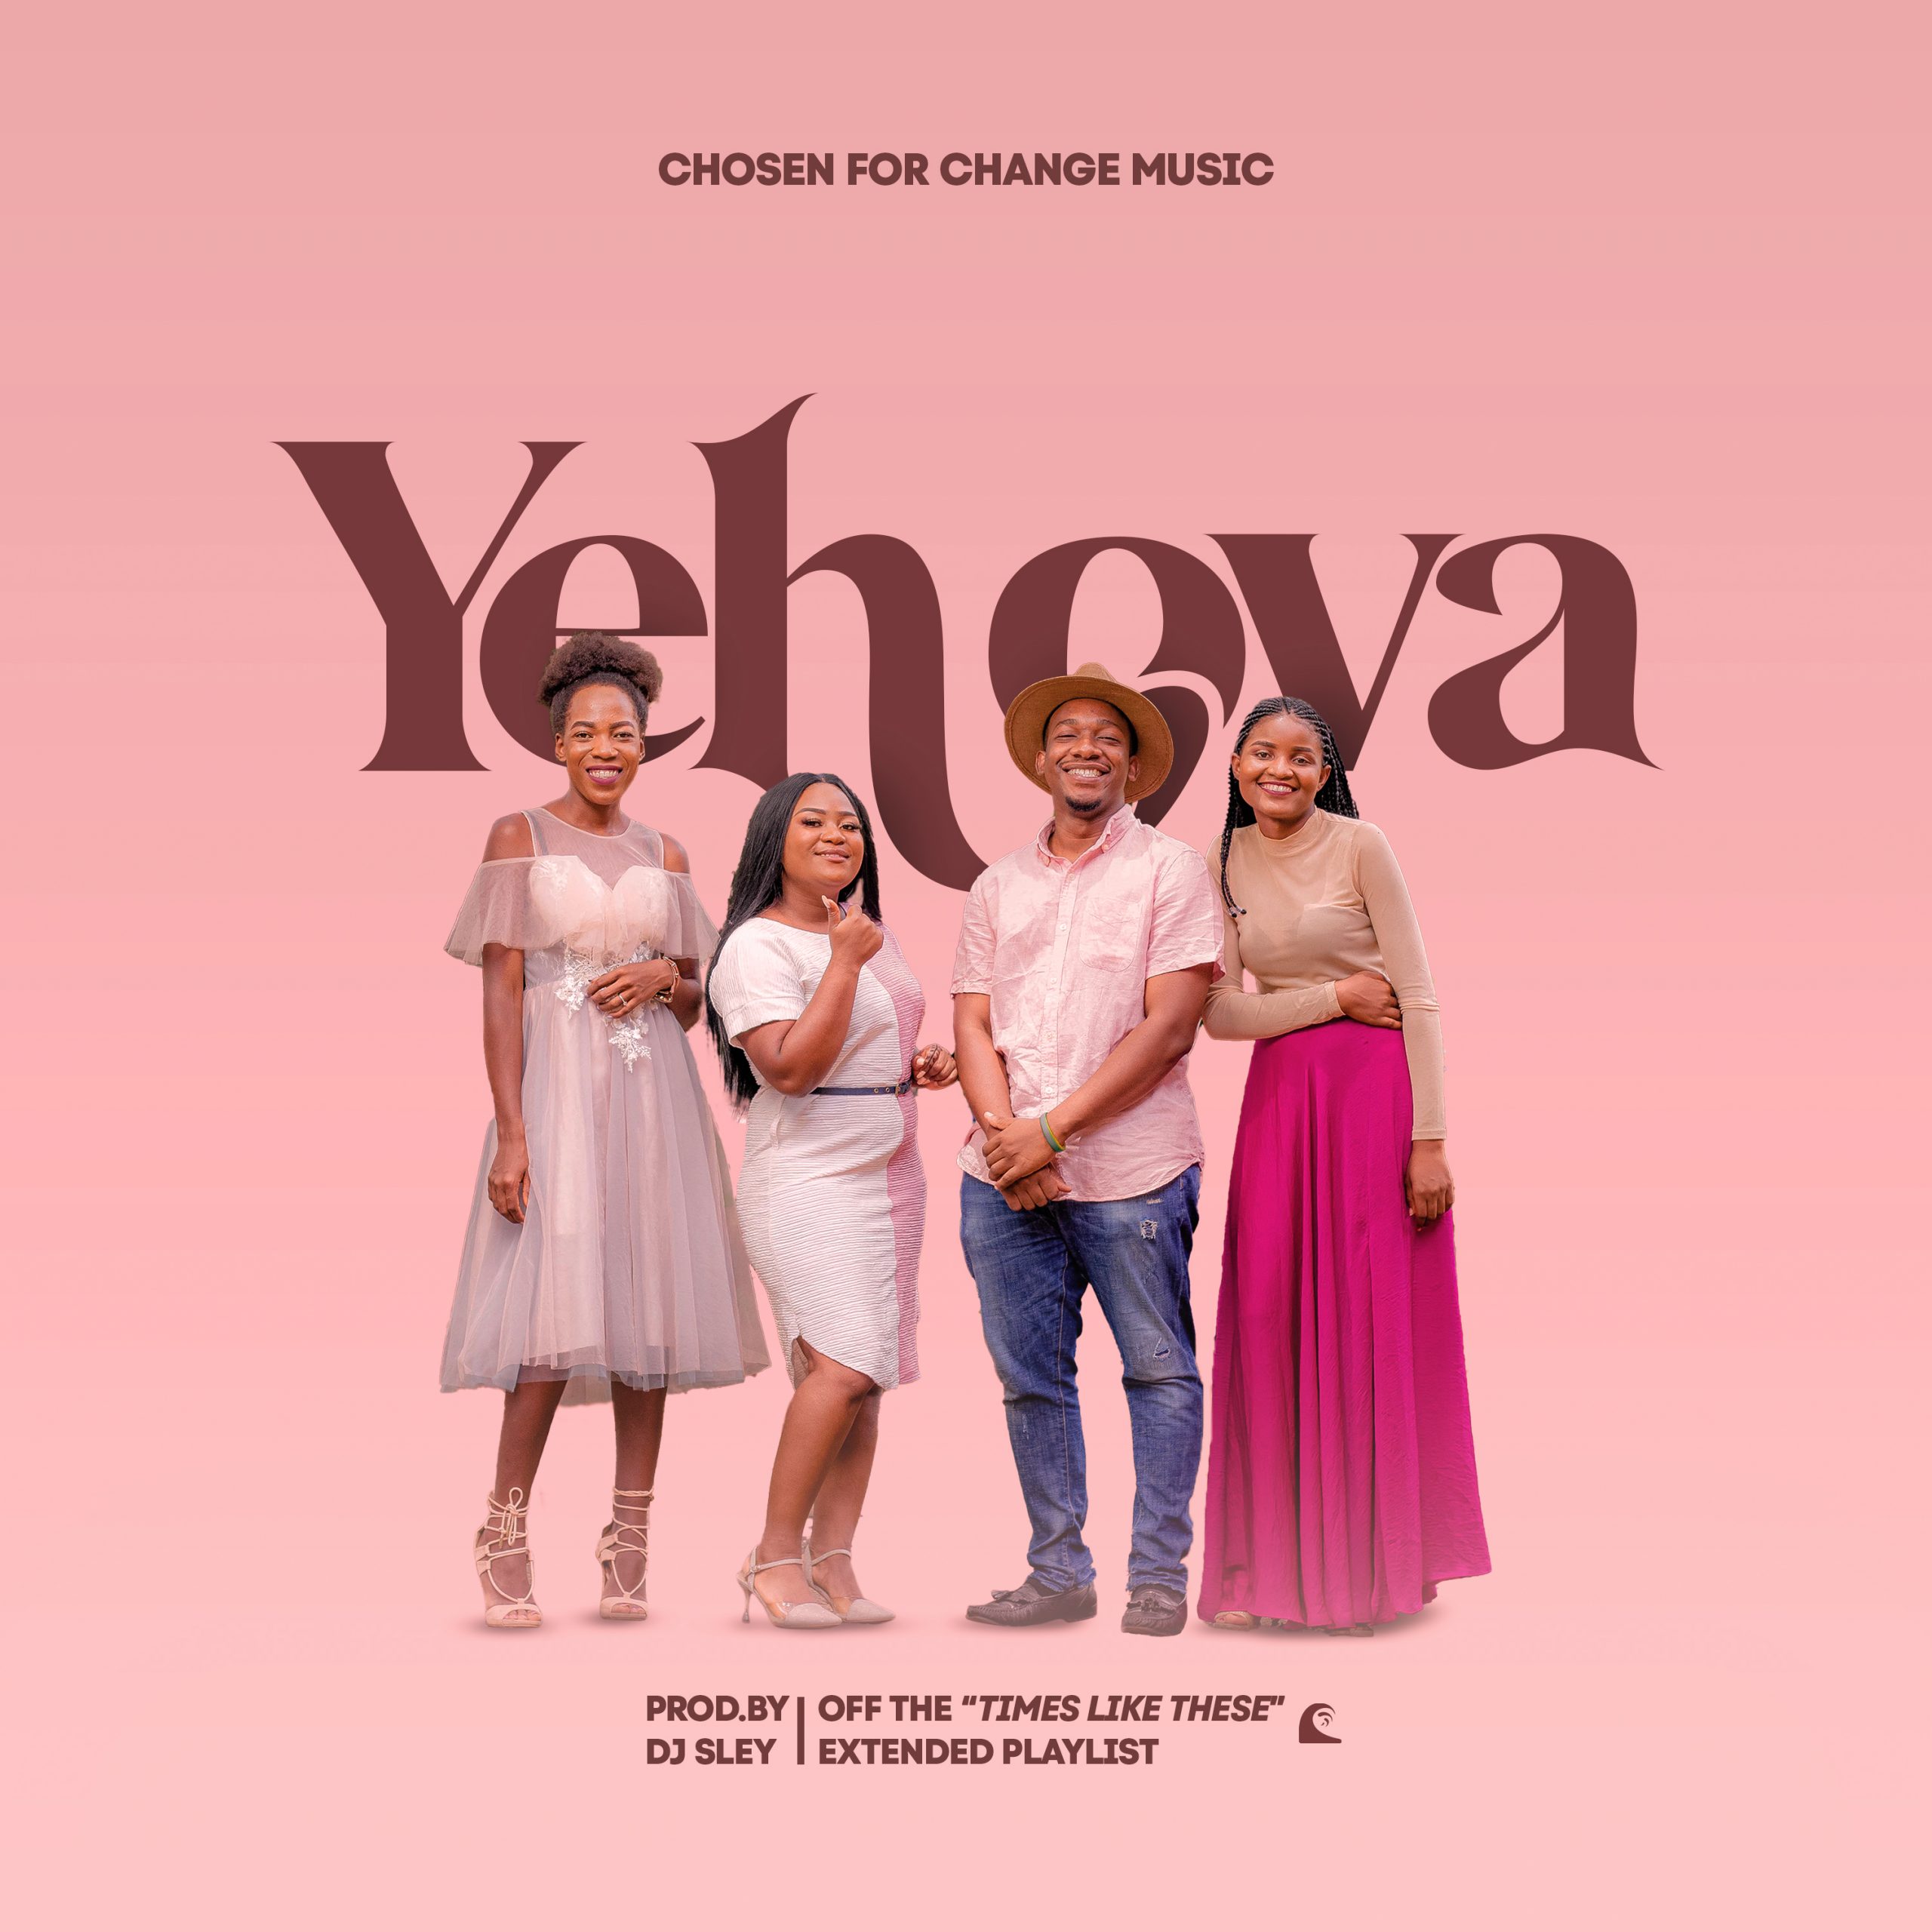 Chosen For Change – Yehova (Prod. DJ Sley)